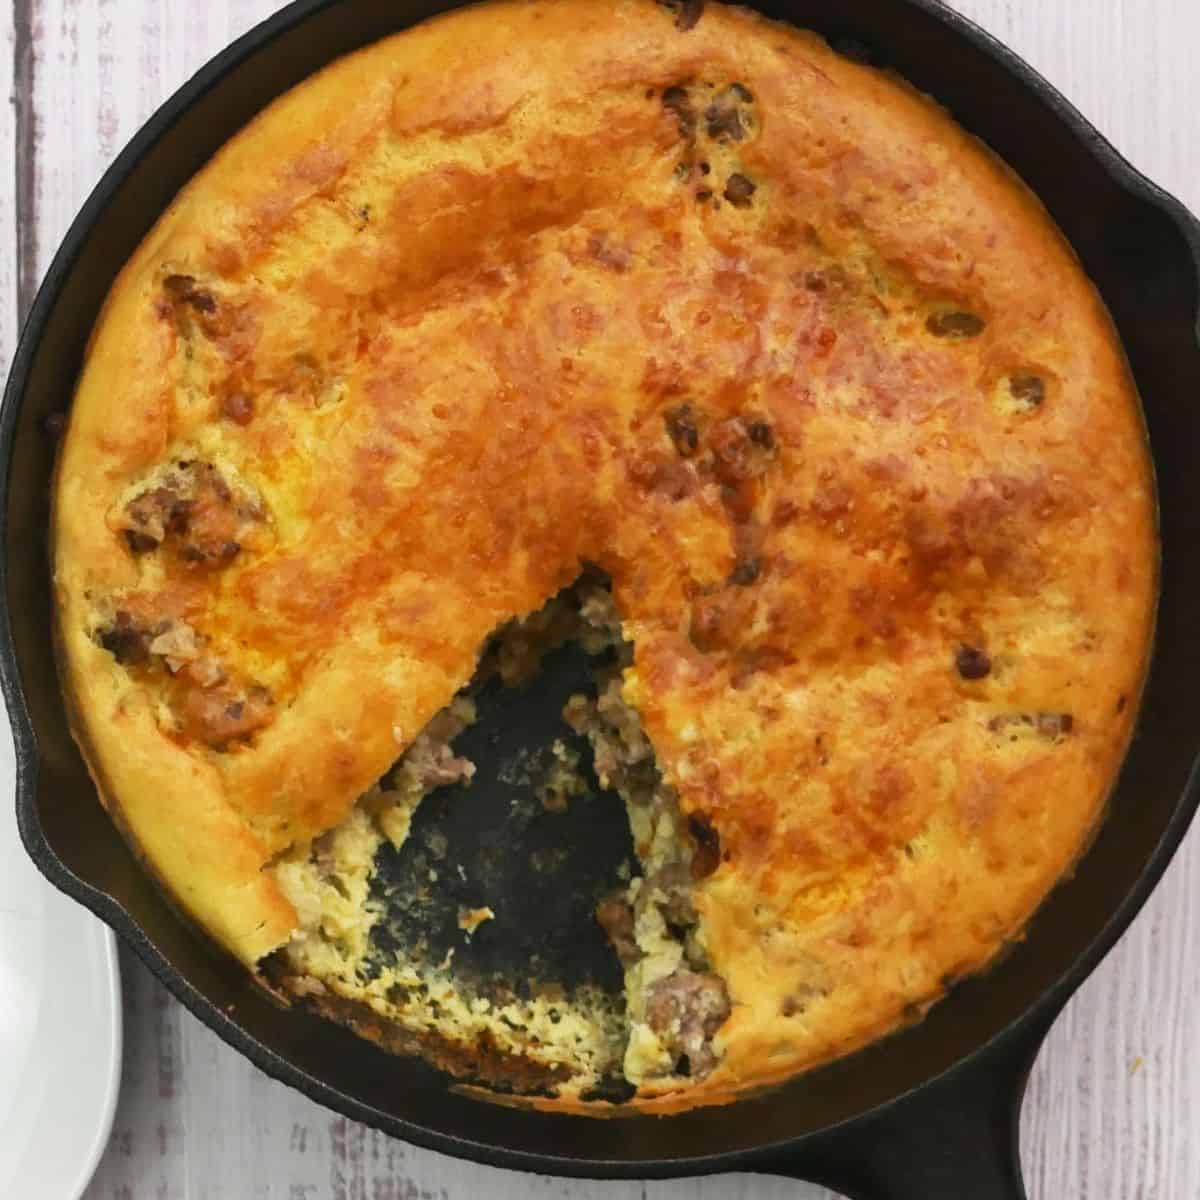 25 Best Savory Pies & Recipes To Make » Recipefairy.com